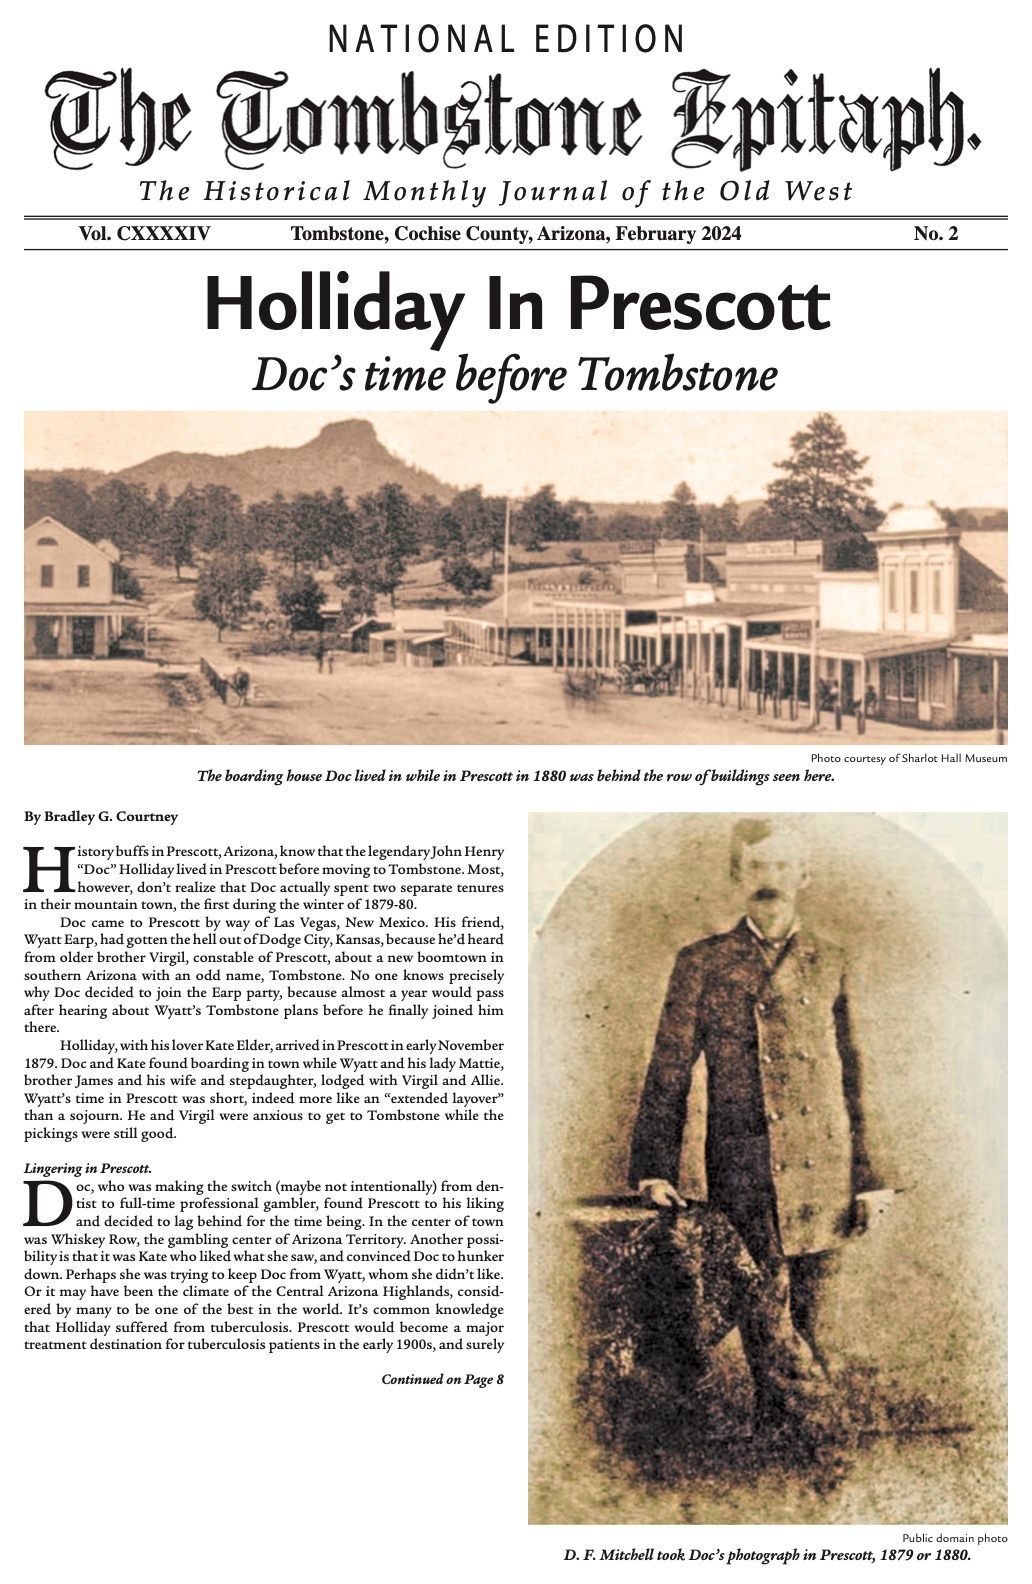 Doc Holliday in Prescott